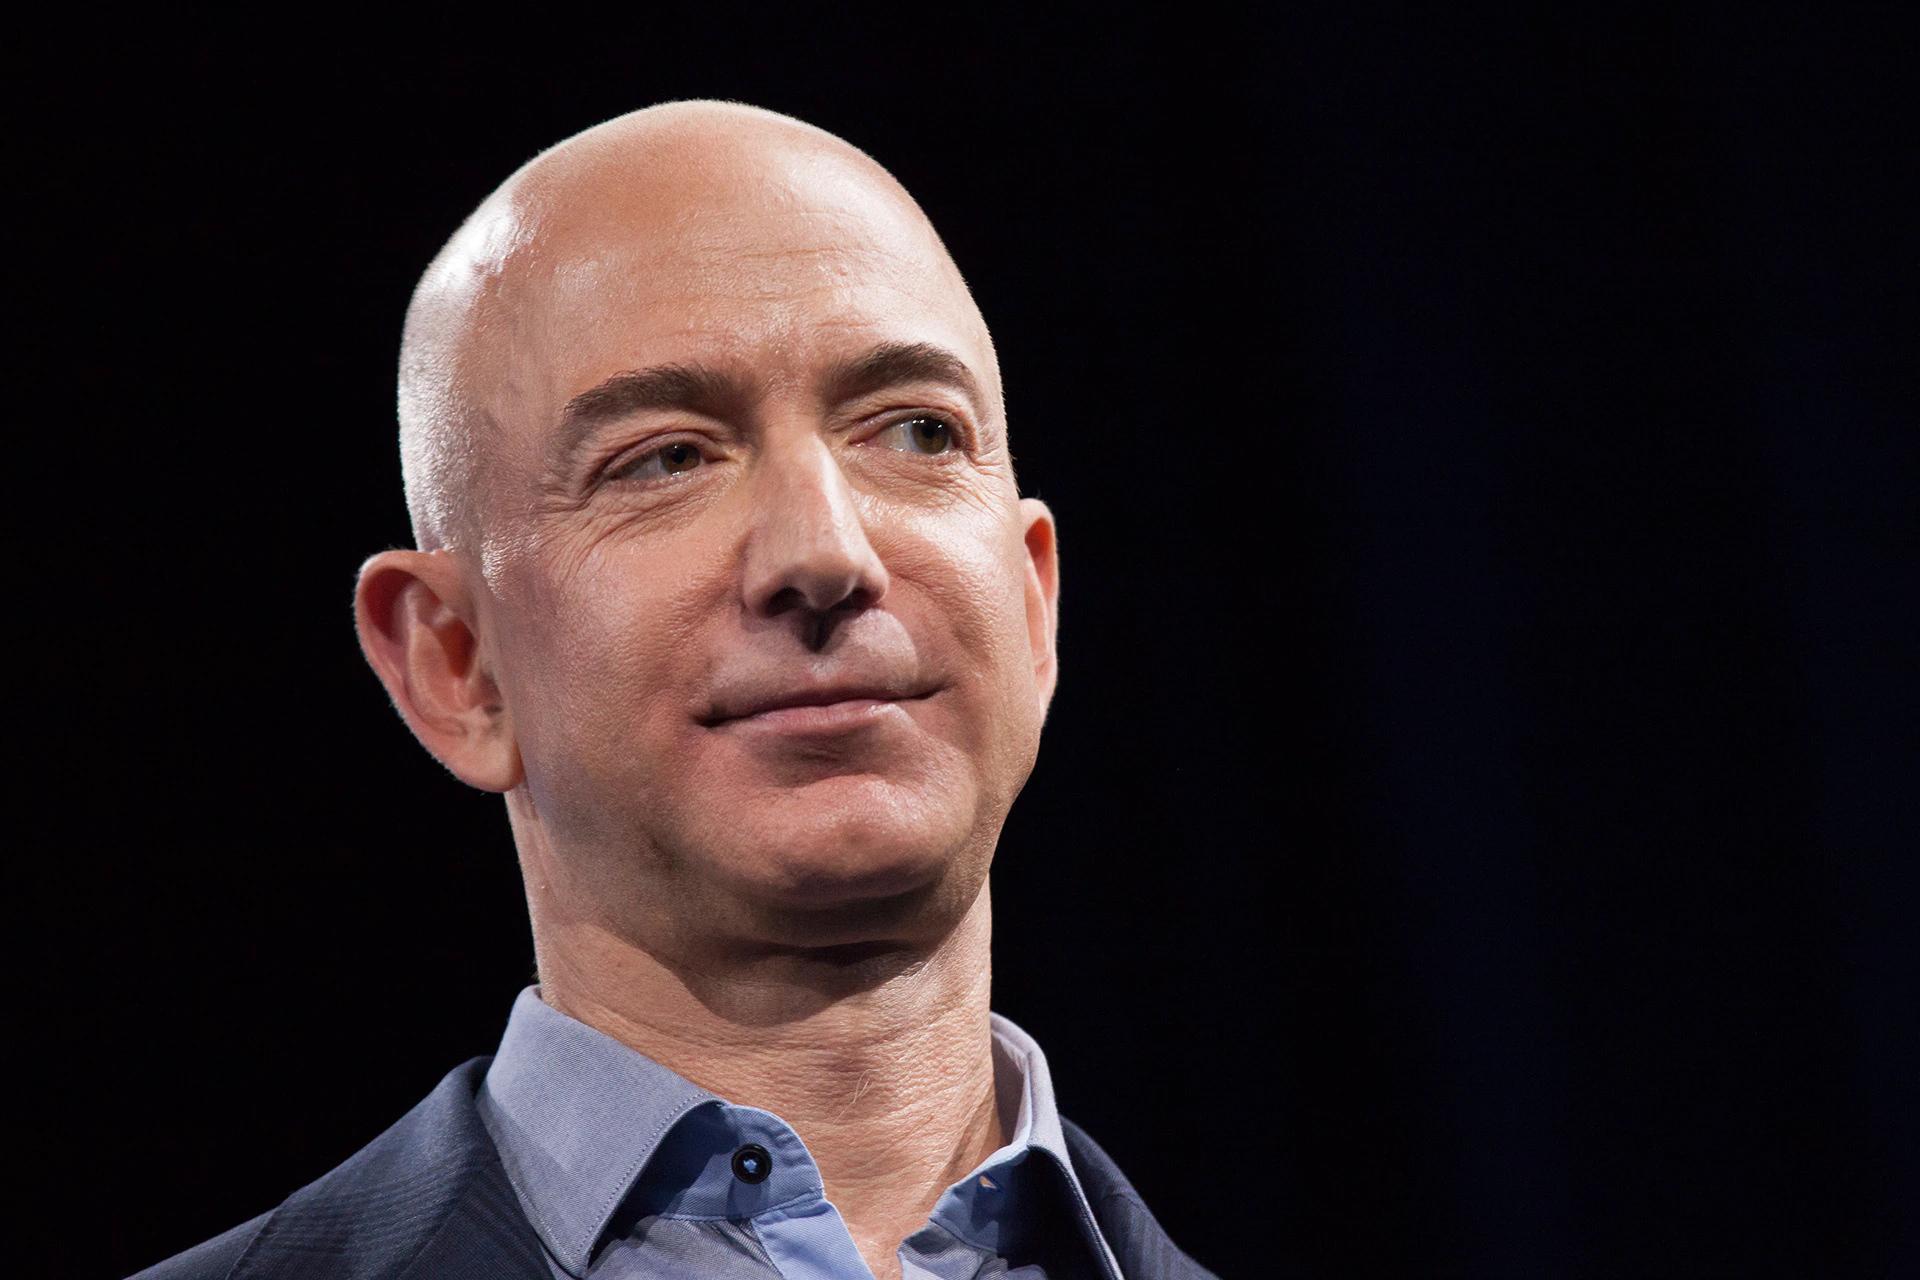 مرجع متخصصين ايران نماي نزديك چهره جف بيزوس / Jeff Bezos بنيان گذار آمازون / Amazon